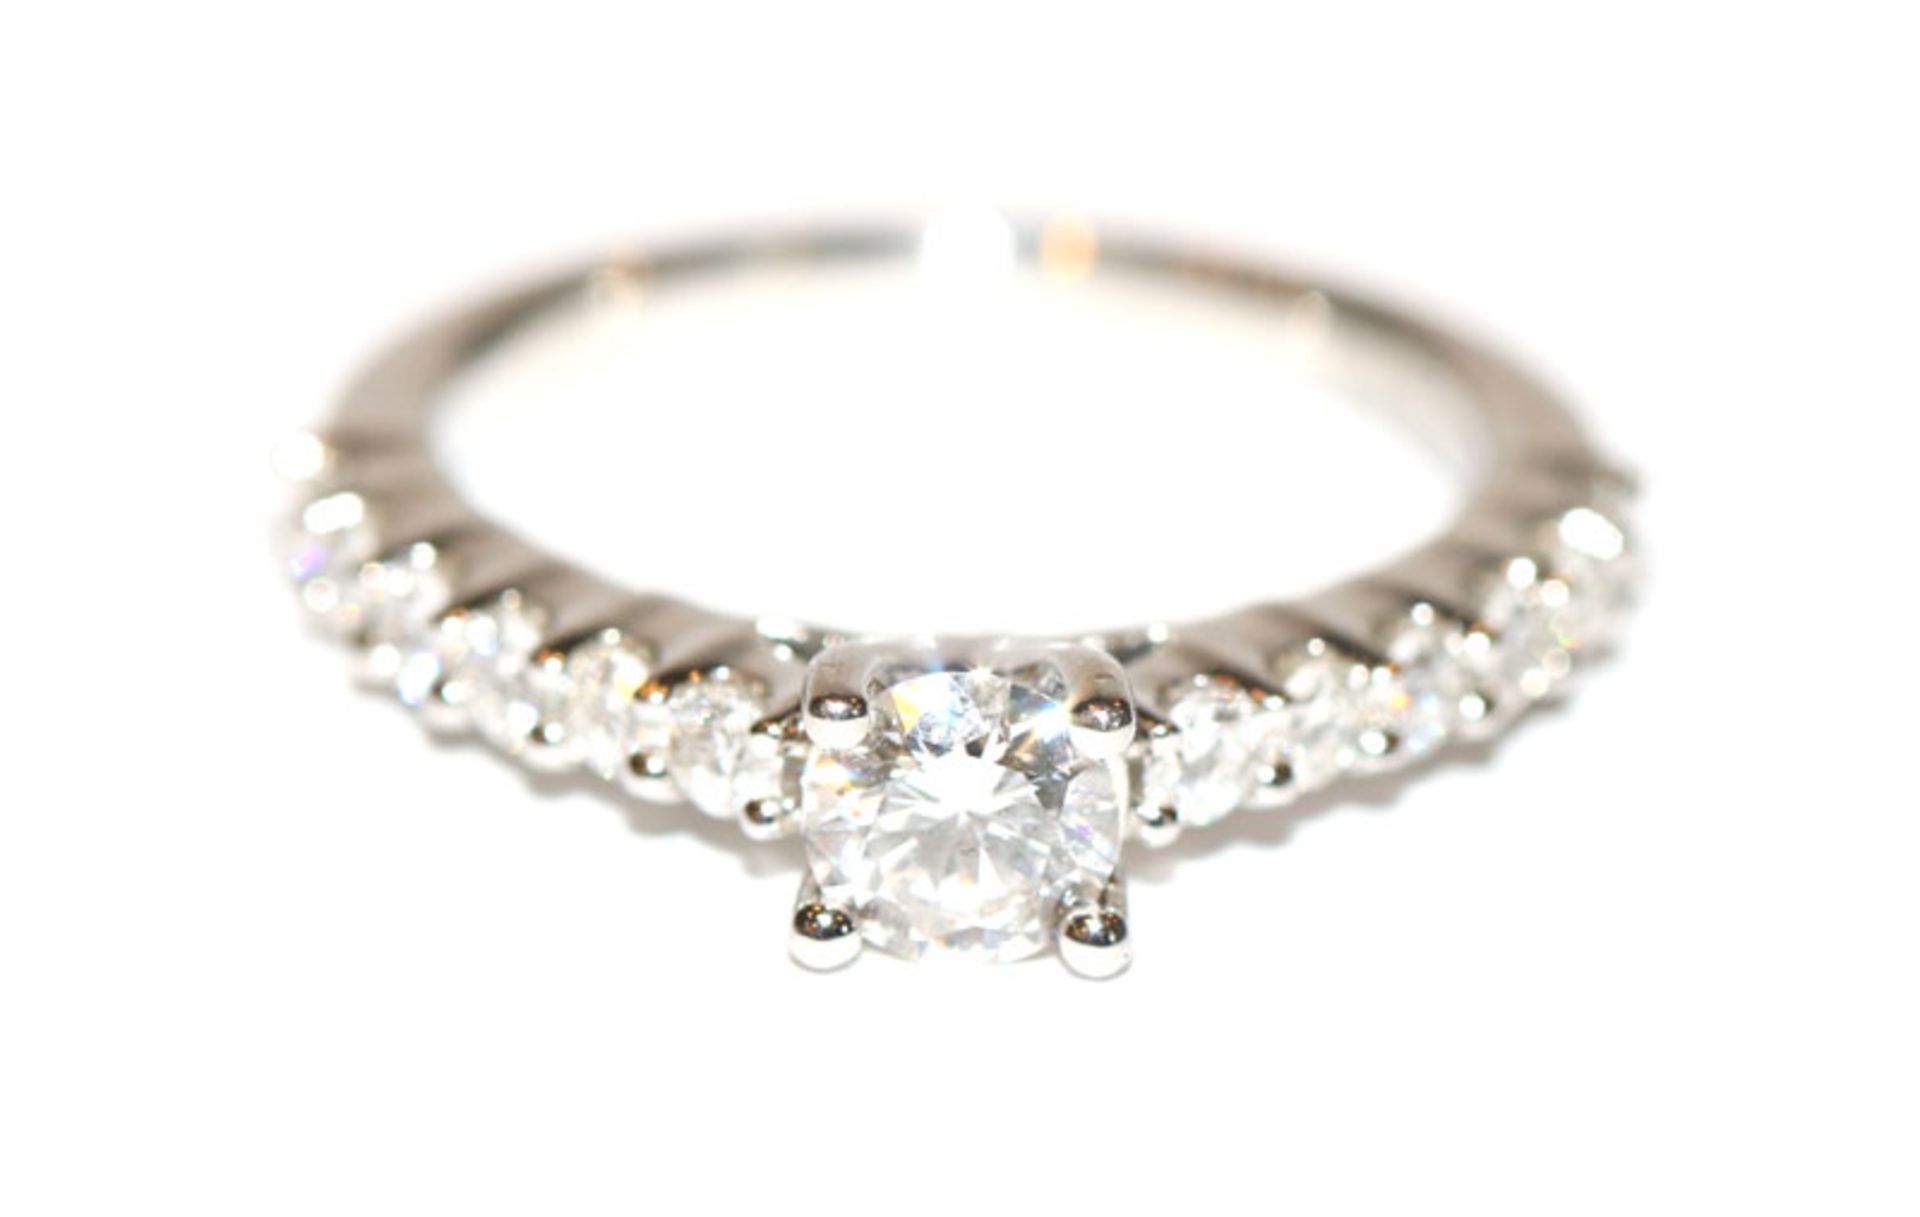 Diamant Ring, 950 Platin mit 13 Diamanten, zus. 0,35 ct. tw, Gr. 48, sehr schöne klassische